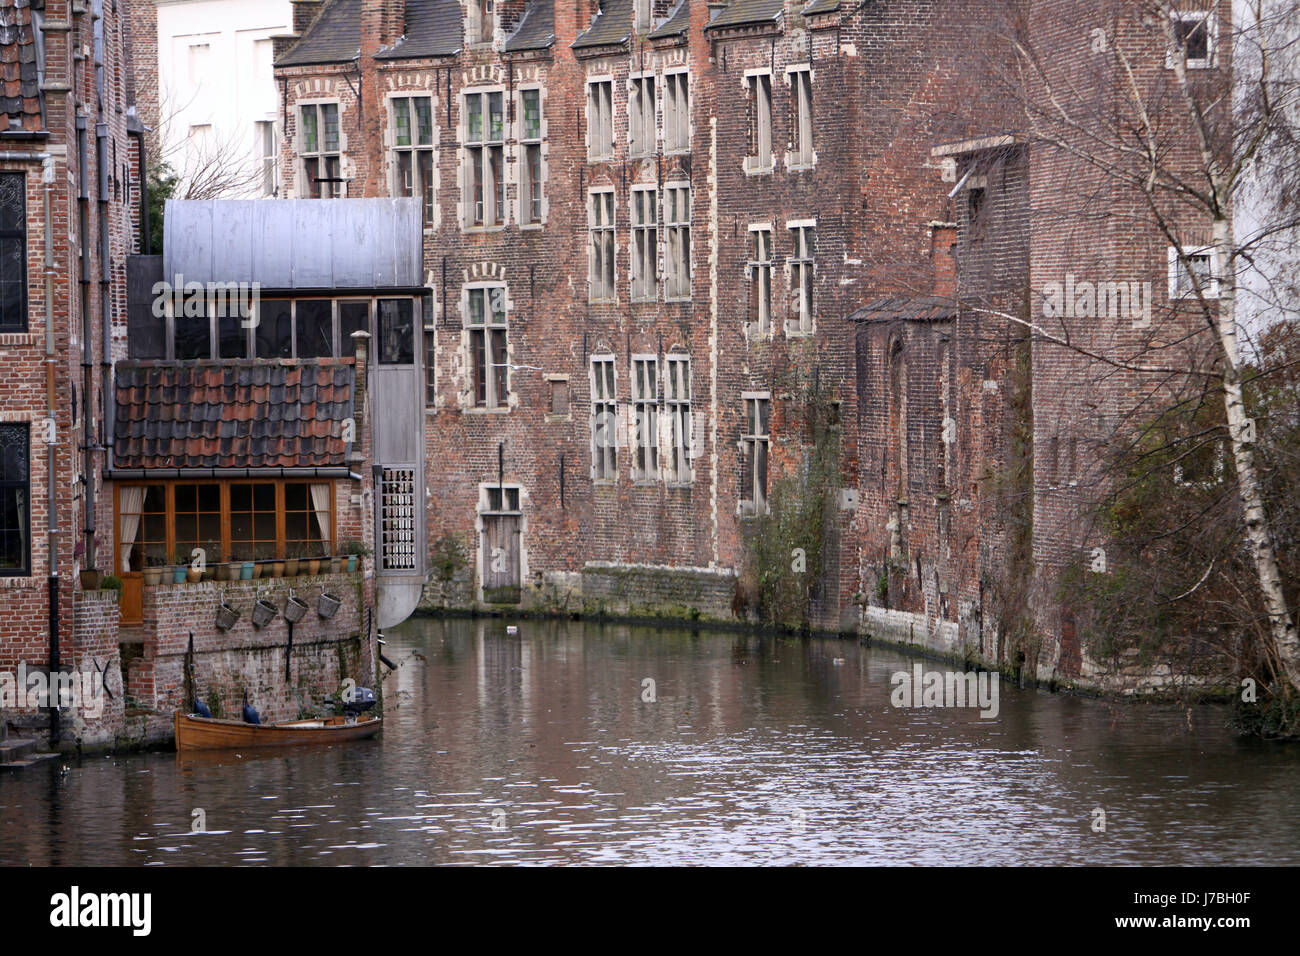 Billet d'histoire historique vieille ville ville ville canal de villes en dehors de l'Europe Banque D'Images